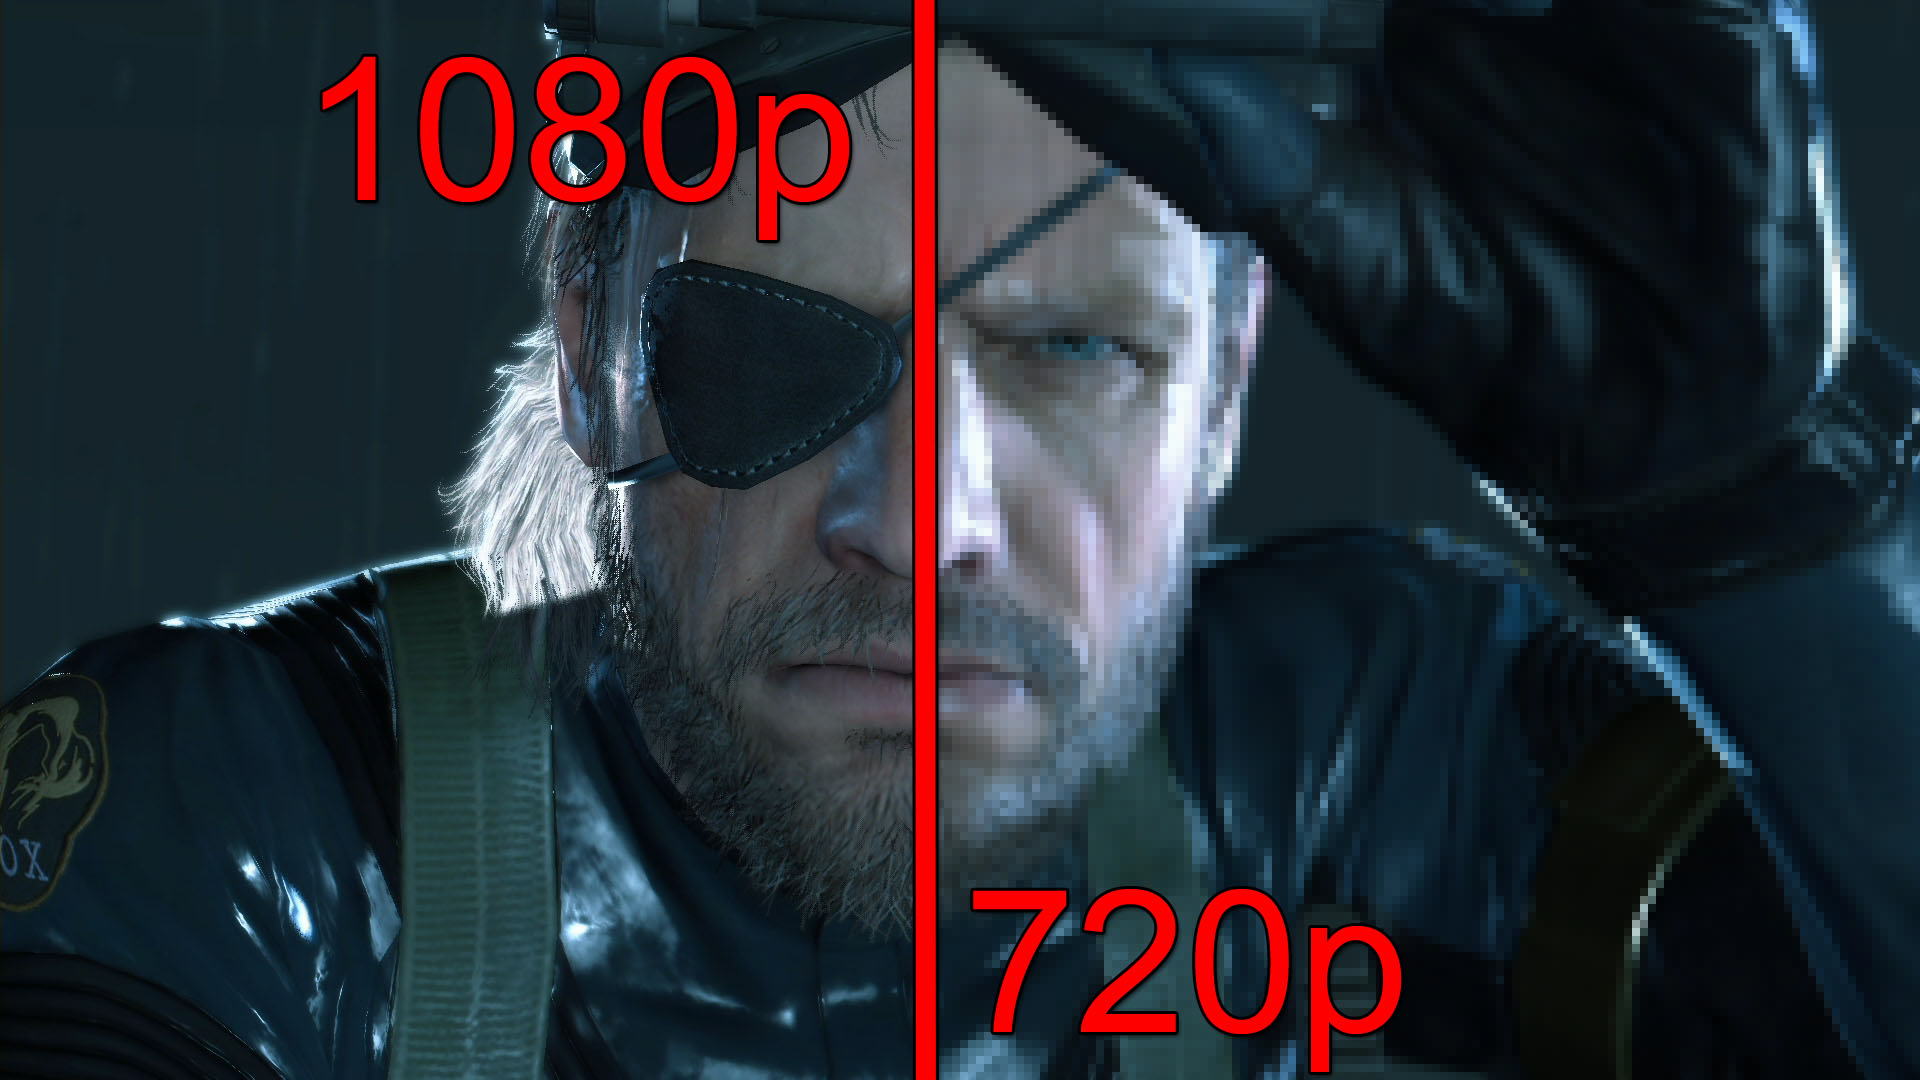 Er 720p bedre enn 1080p kamera?